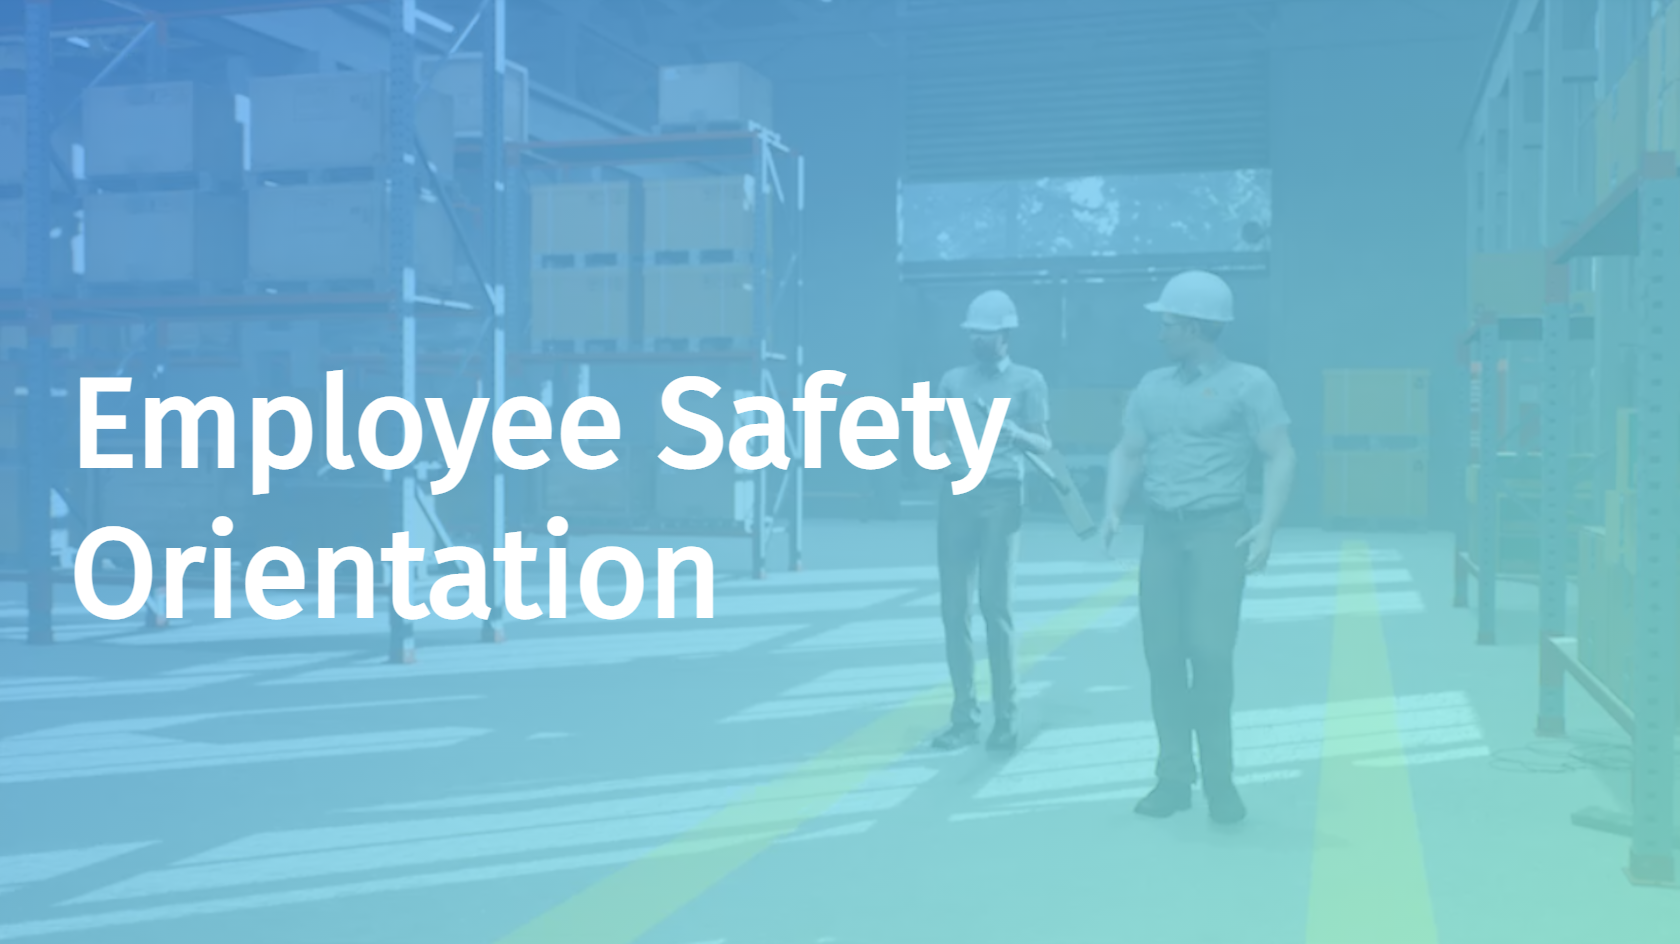 Employee Safety Orientation